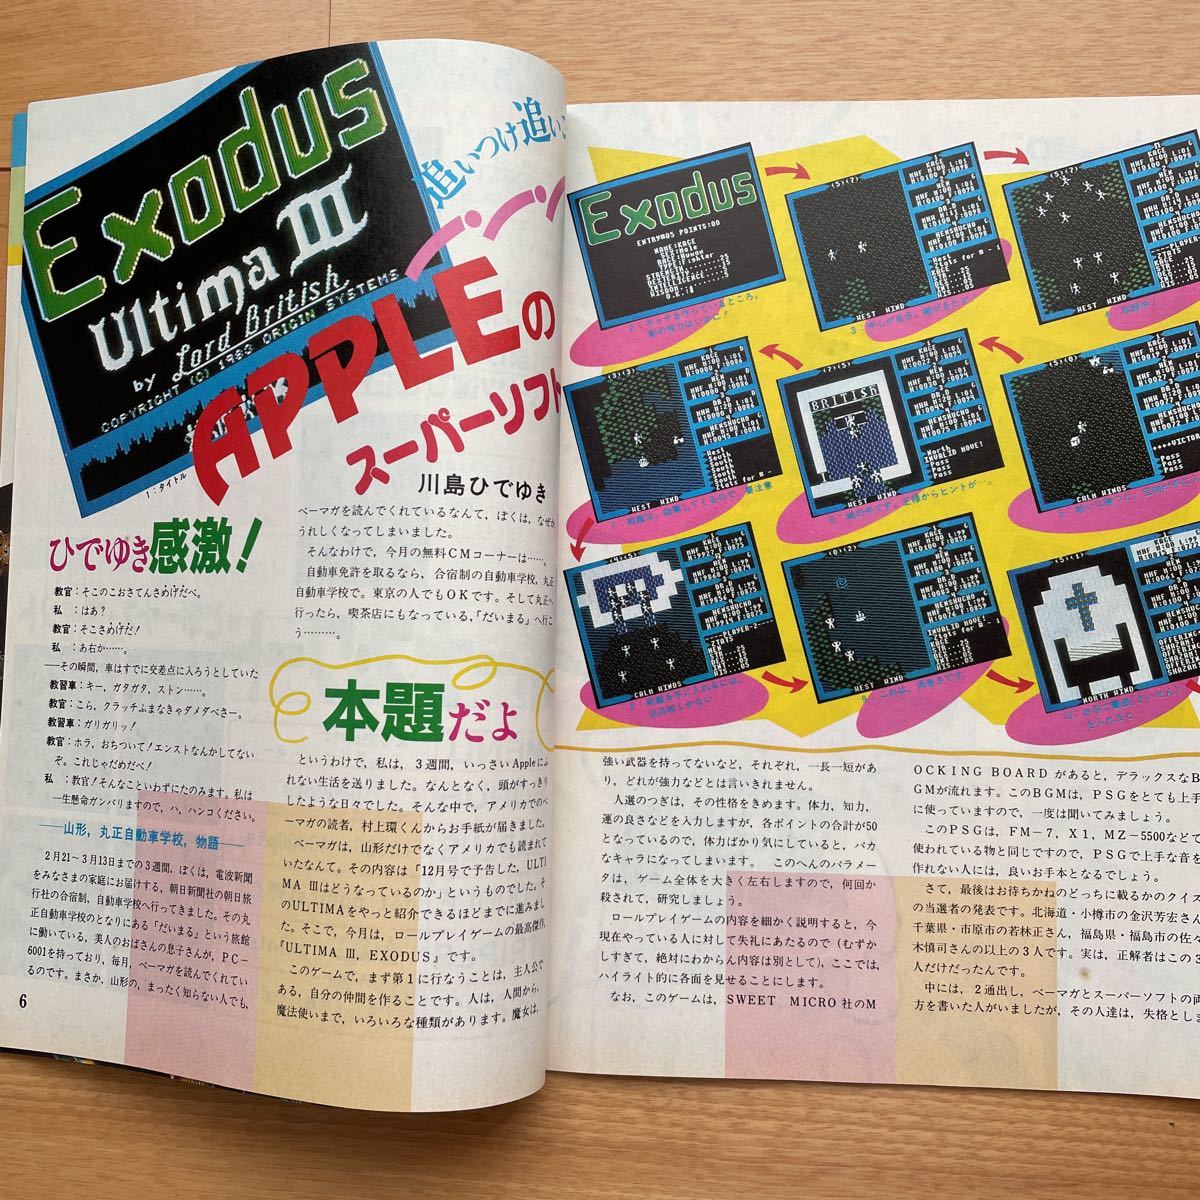  microcomputer BASIC журнал 1984 год 6 месяц номер беж maga радиоволны газета фирма дополнение имеется 